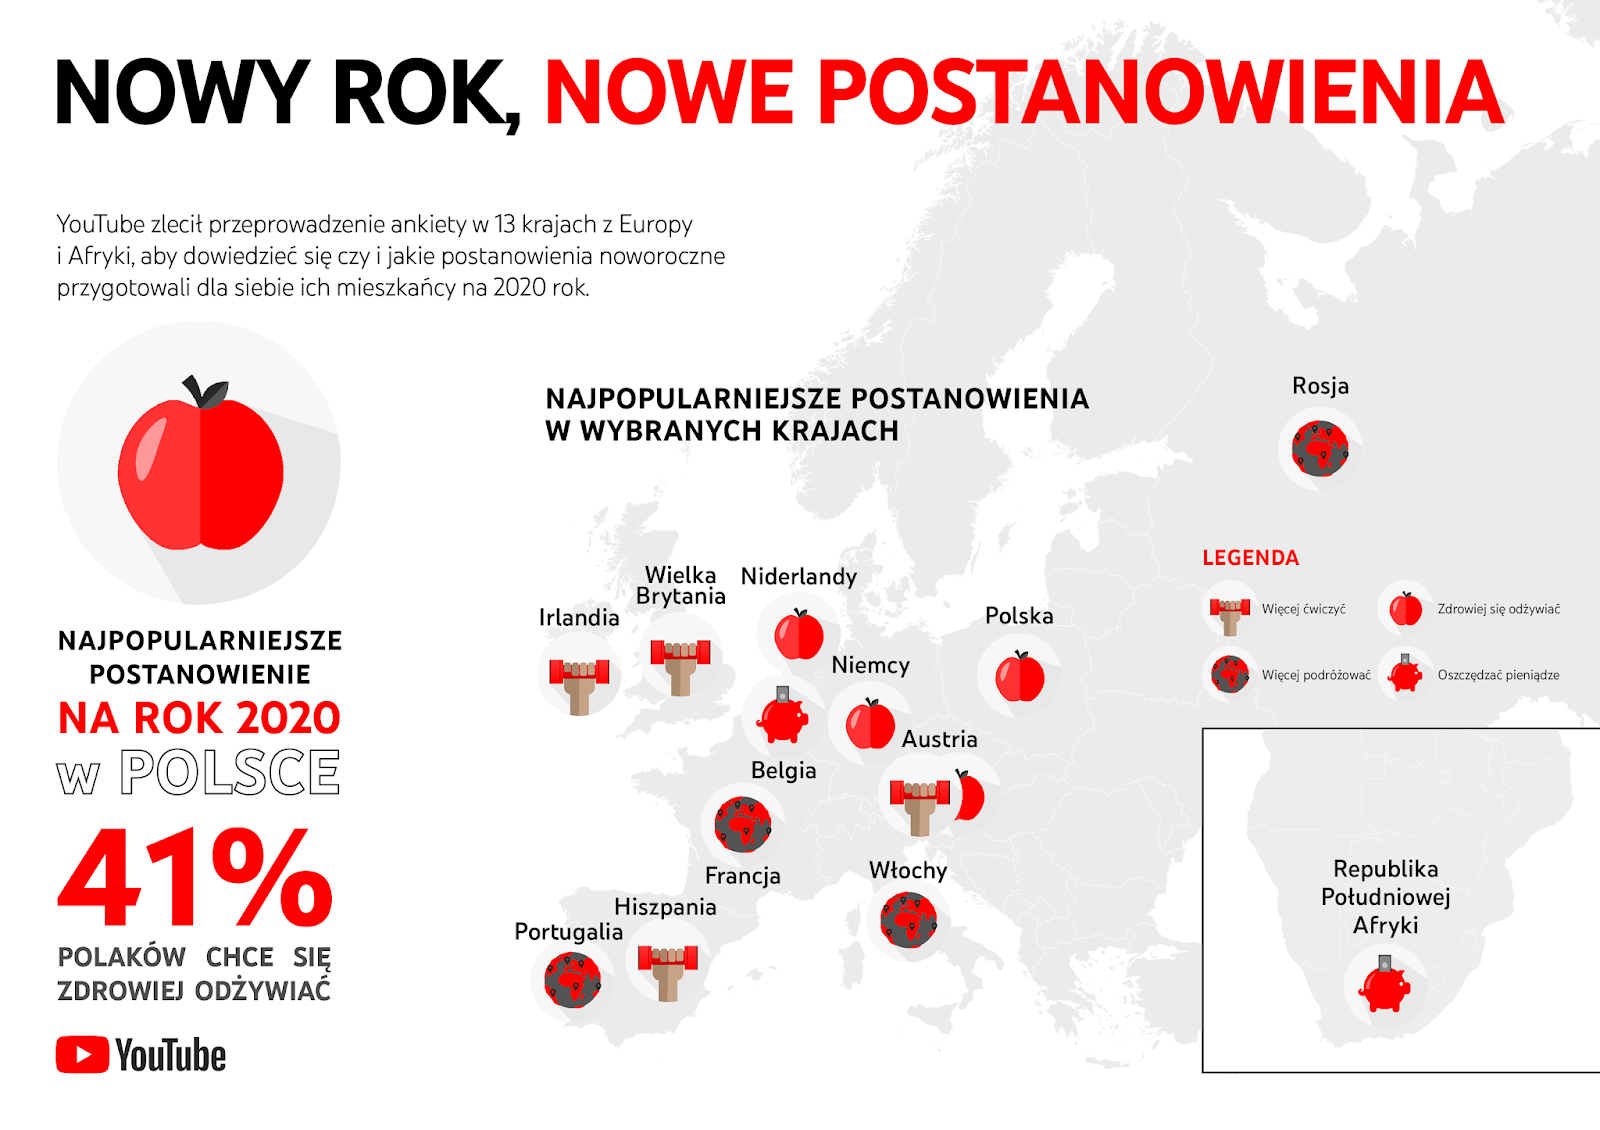 Postanowienia noworoczne Polaków na 2020 rok (badanie YTGov)